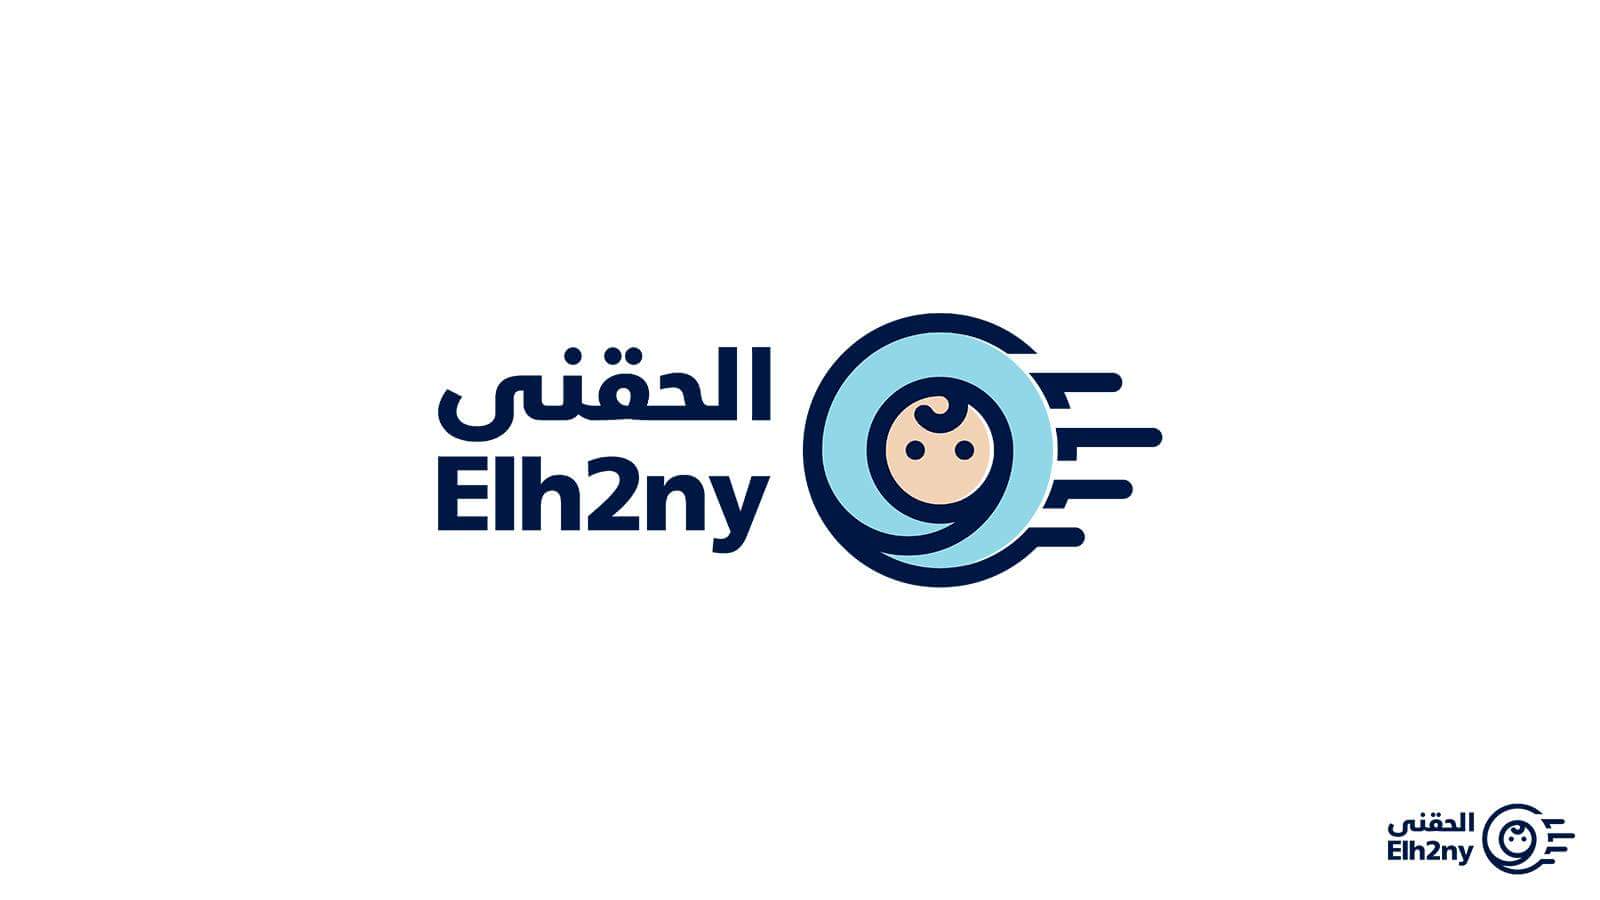 Elha2ny